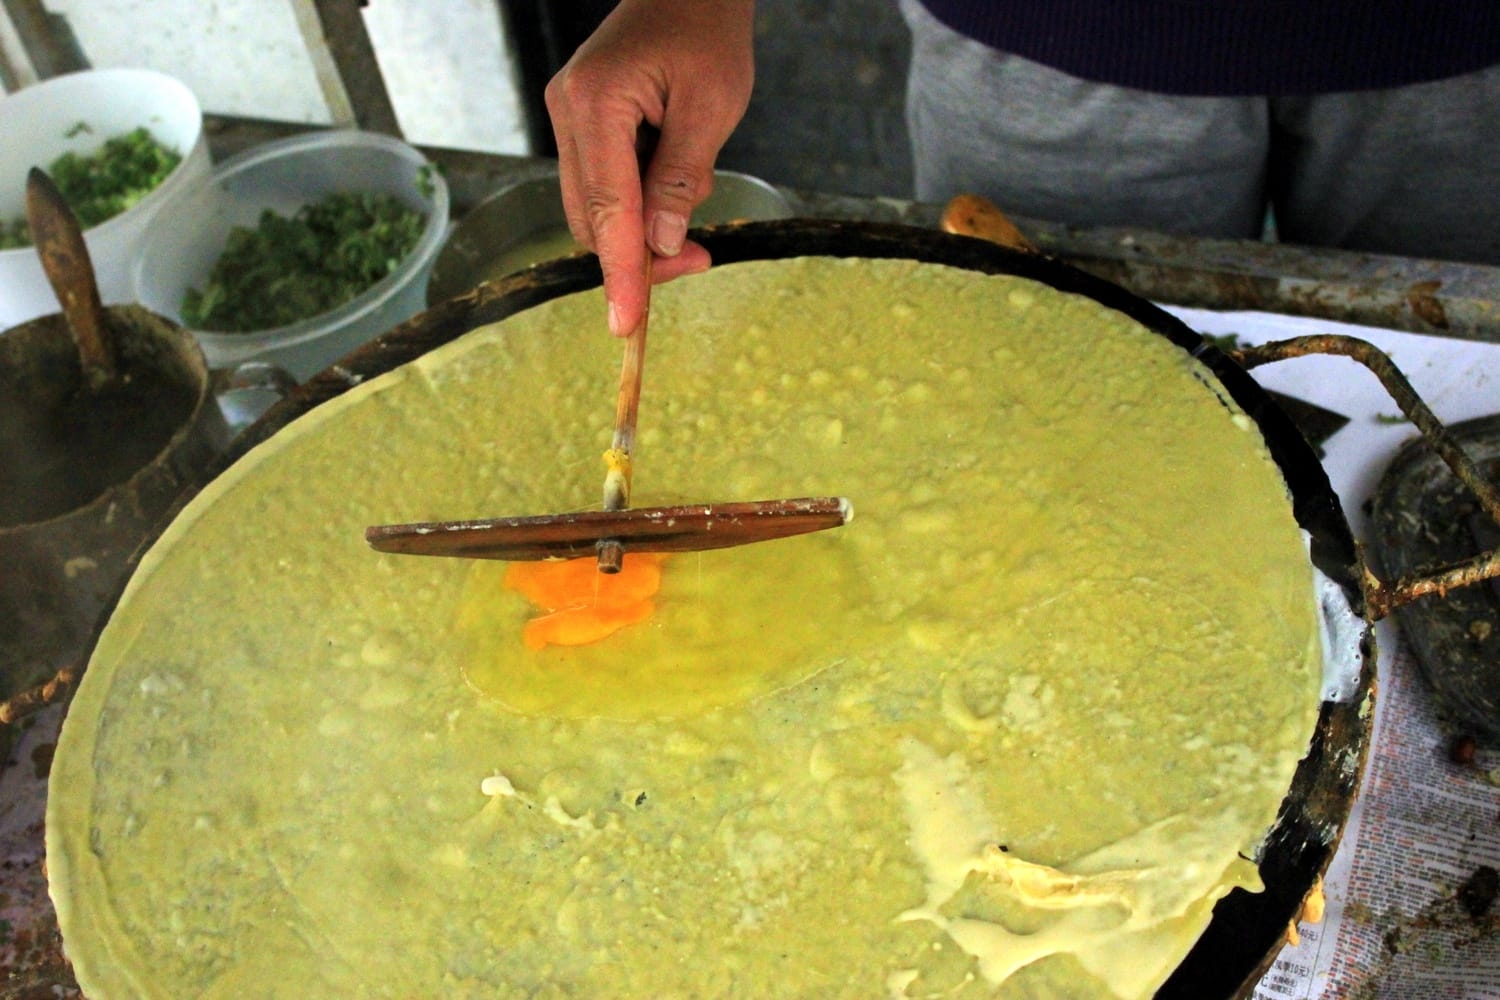 Making pancakes Beijing street desserts